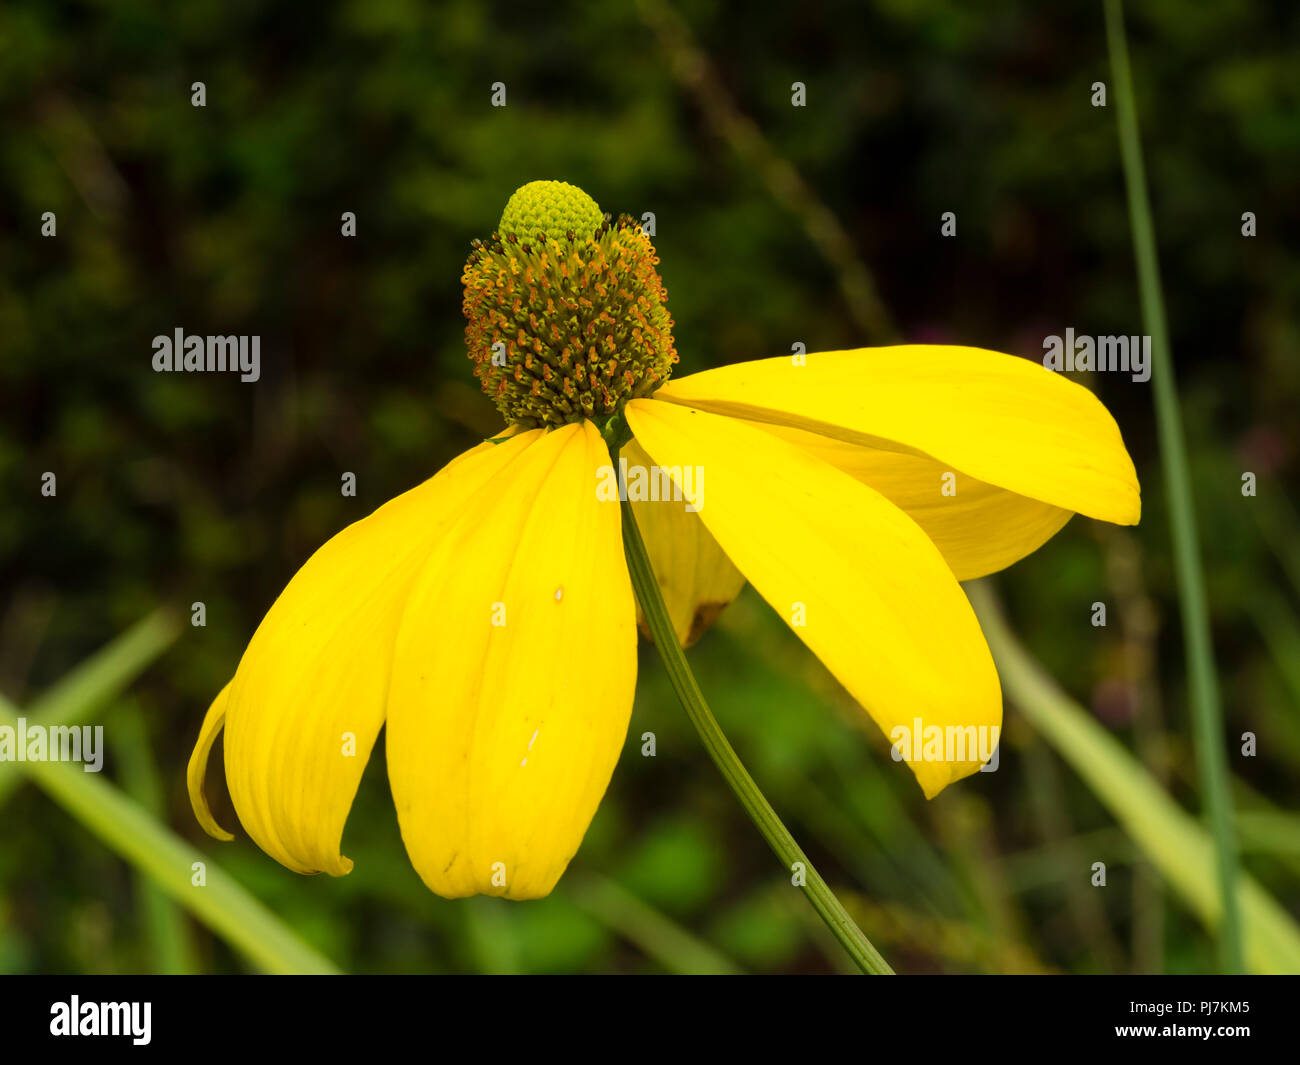 Gelb, Spätsommer Blume Der winterharte Staude cut leaved Kegel Blume, Rudbeckia Baumannii' Herbstsonne' Stockfoto